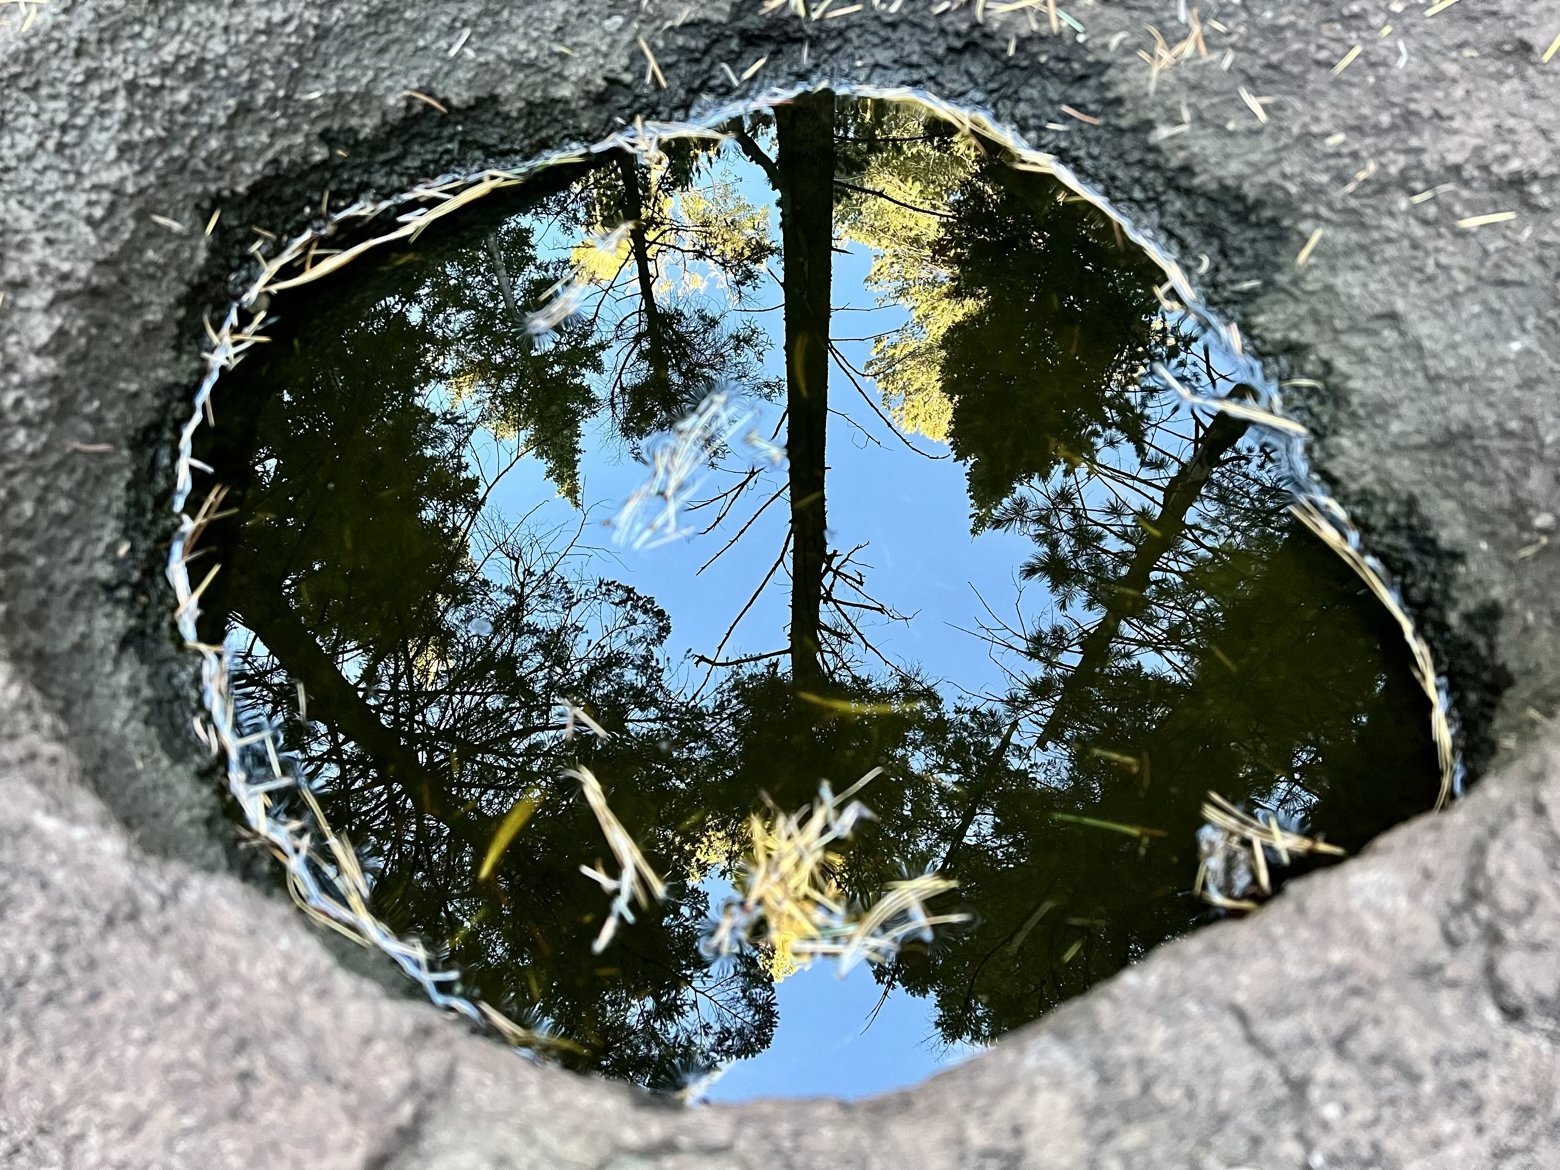 Pothole reflection